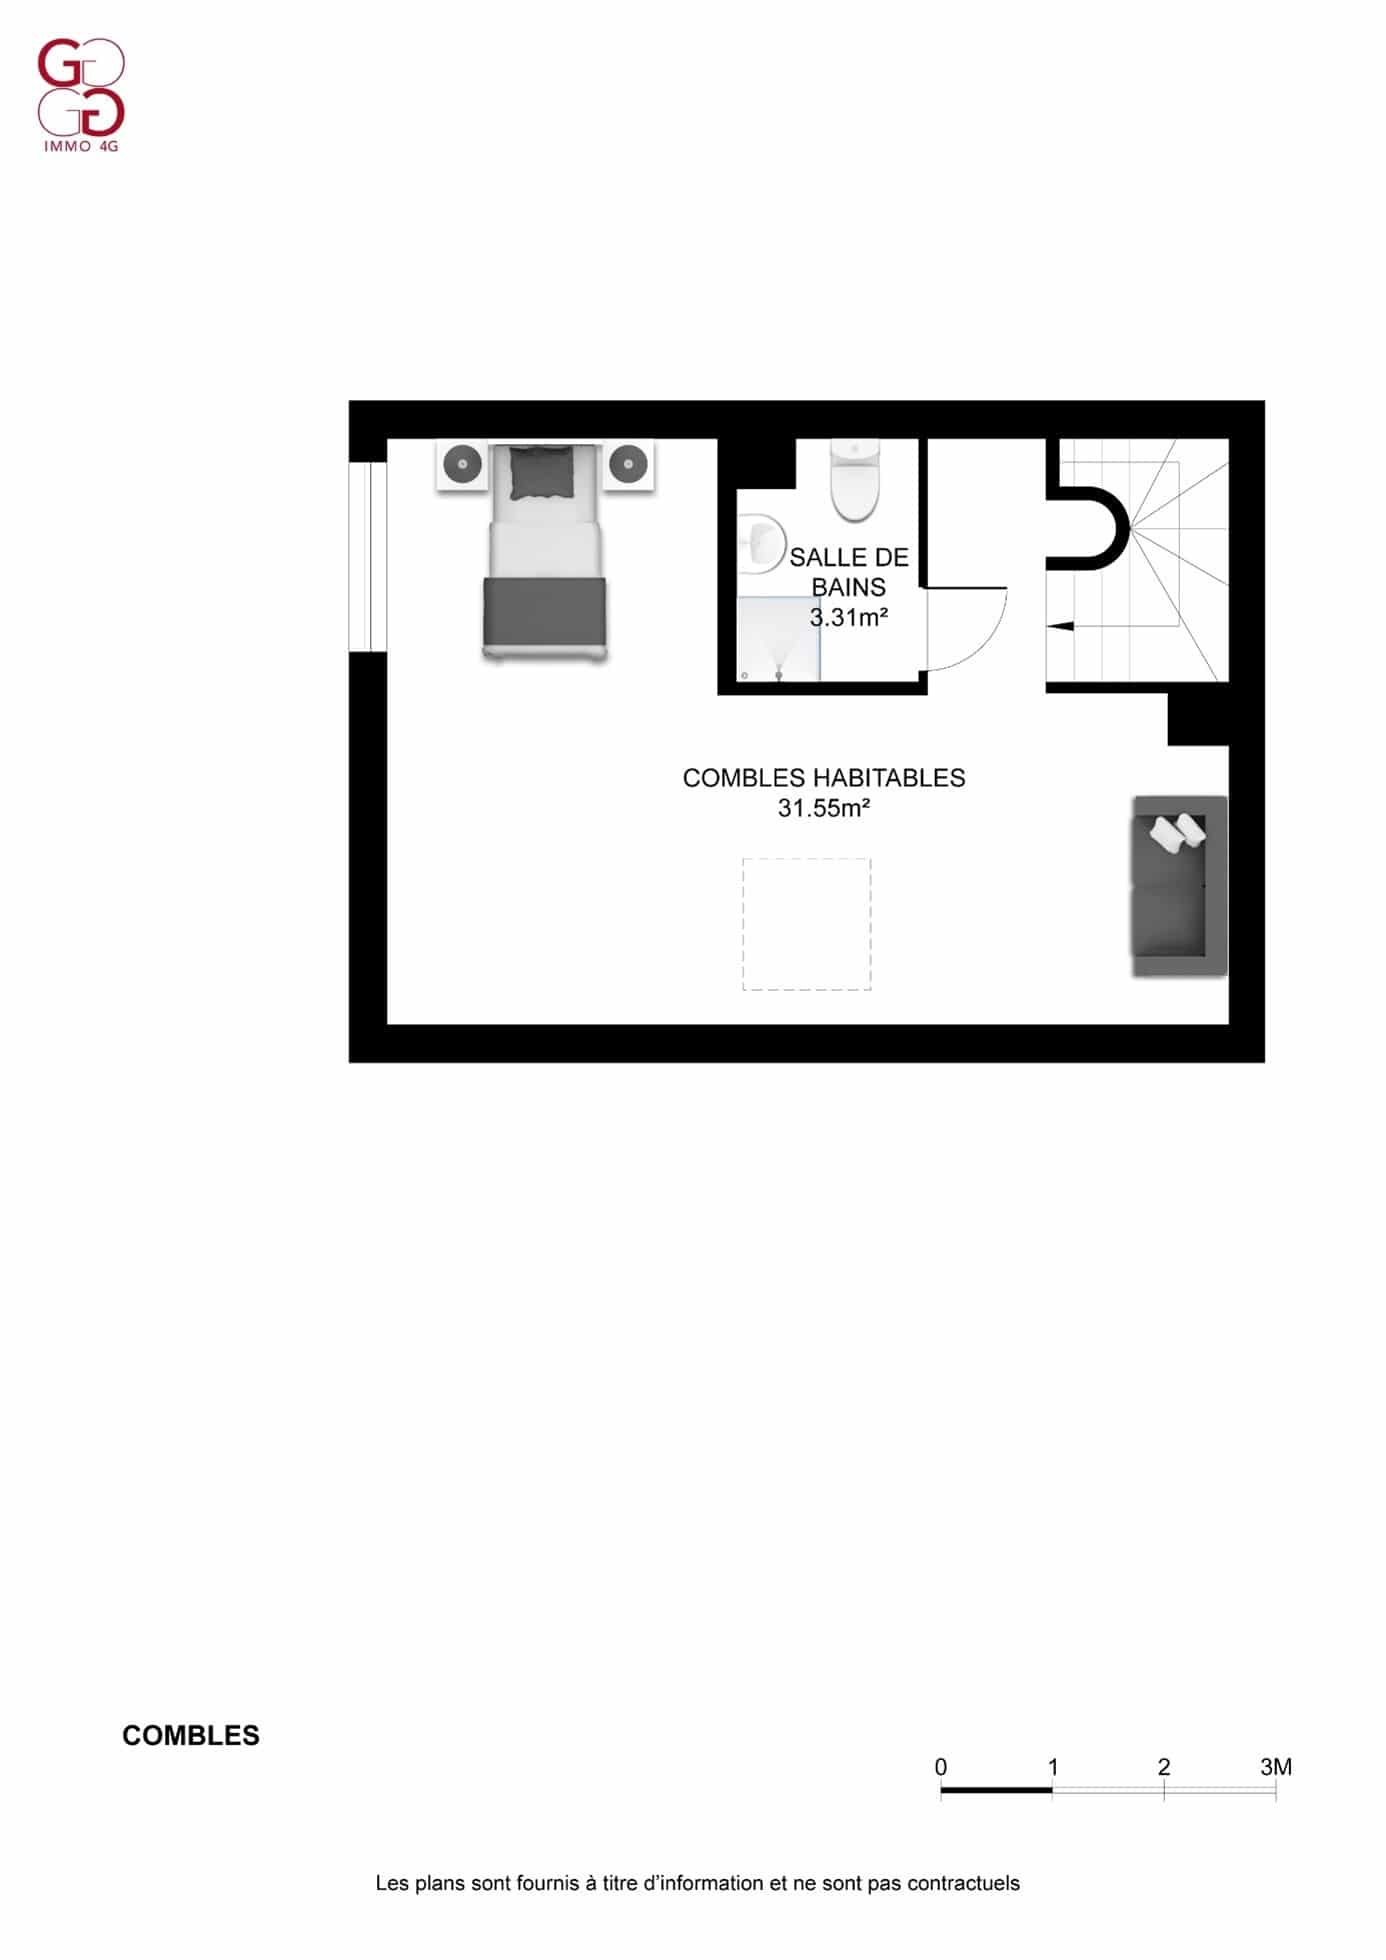 Un plan d'étage d'un petit appartement.